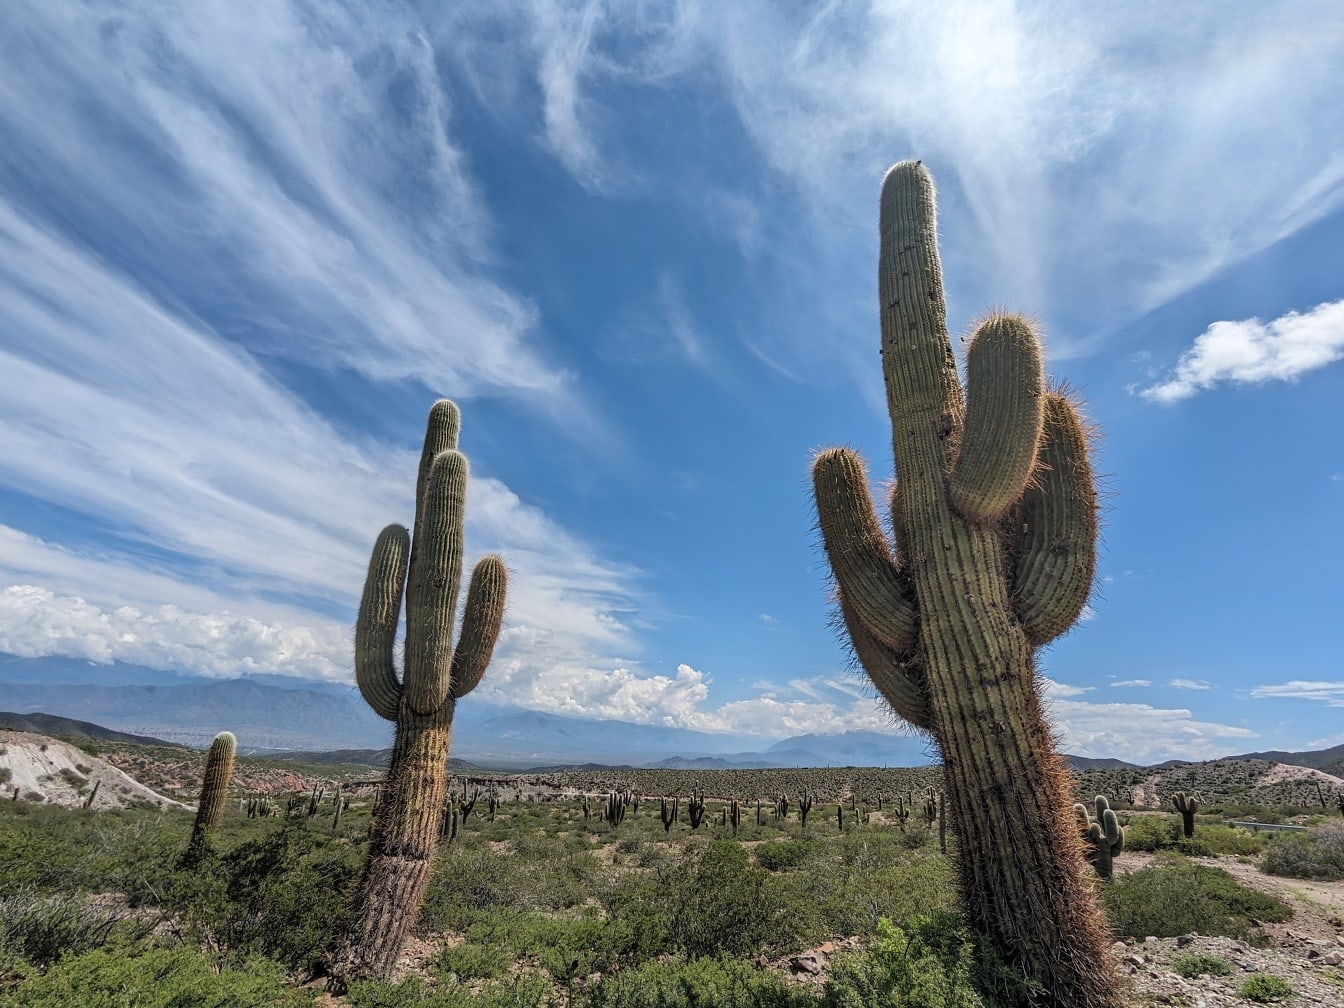 Saguaro-kaktukset (Carnegiea gigantea) kansallispuistossa Saltan maakunnassa Argentiinassa